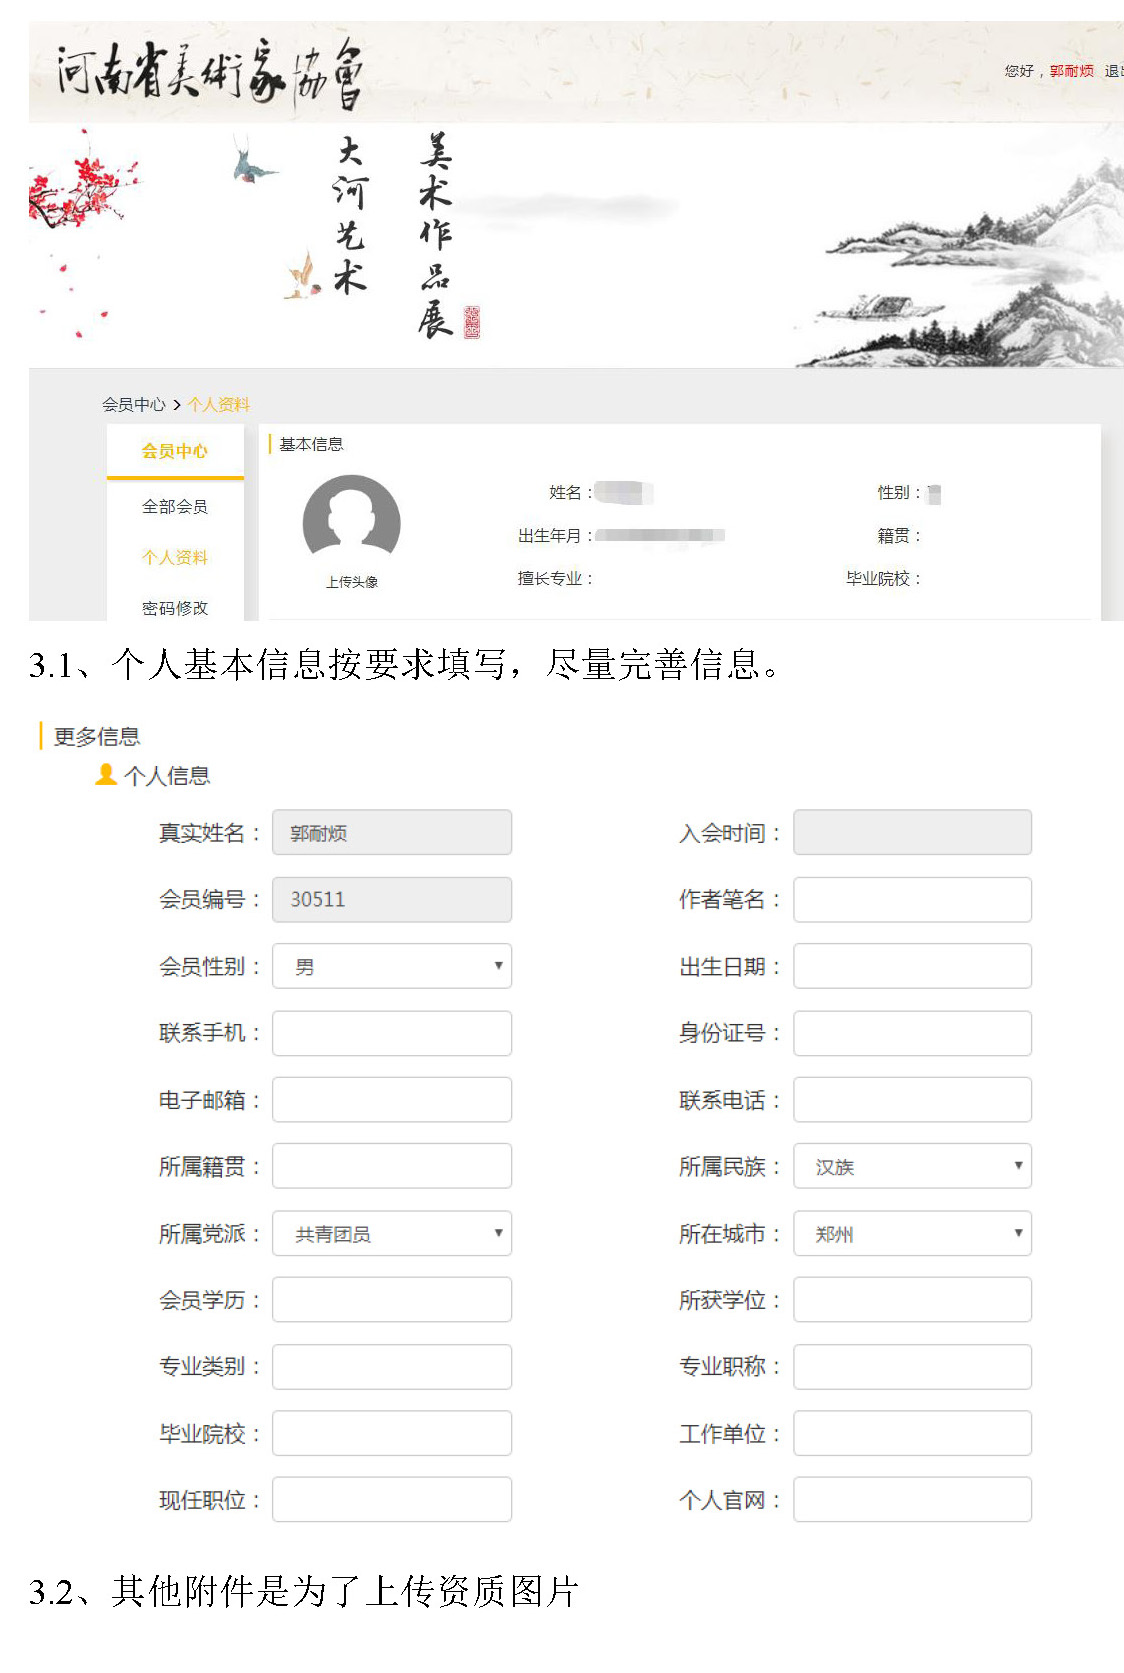 河南省美術家協會會員系統數字化操作說明